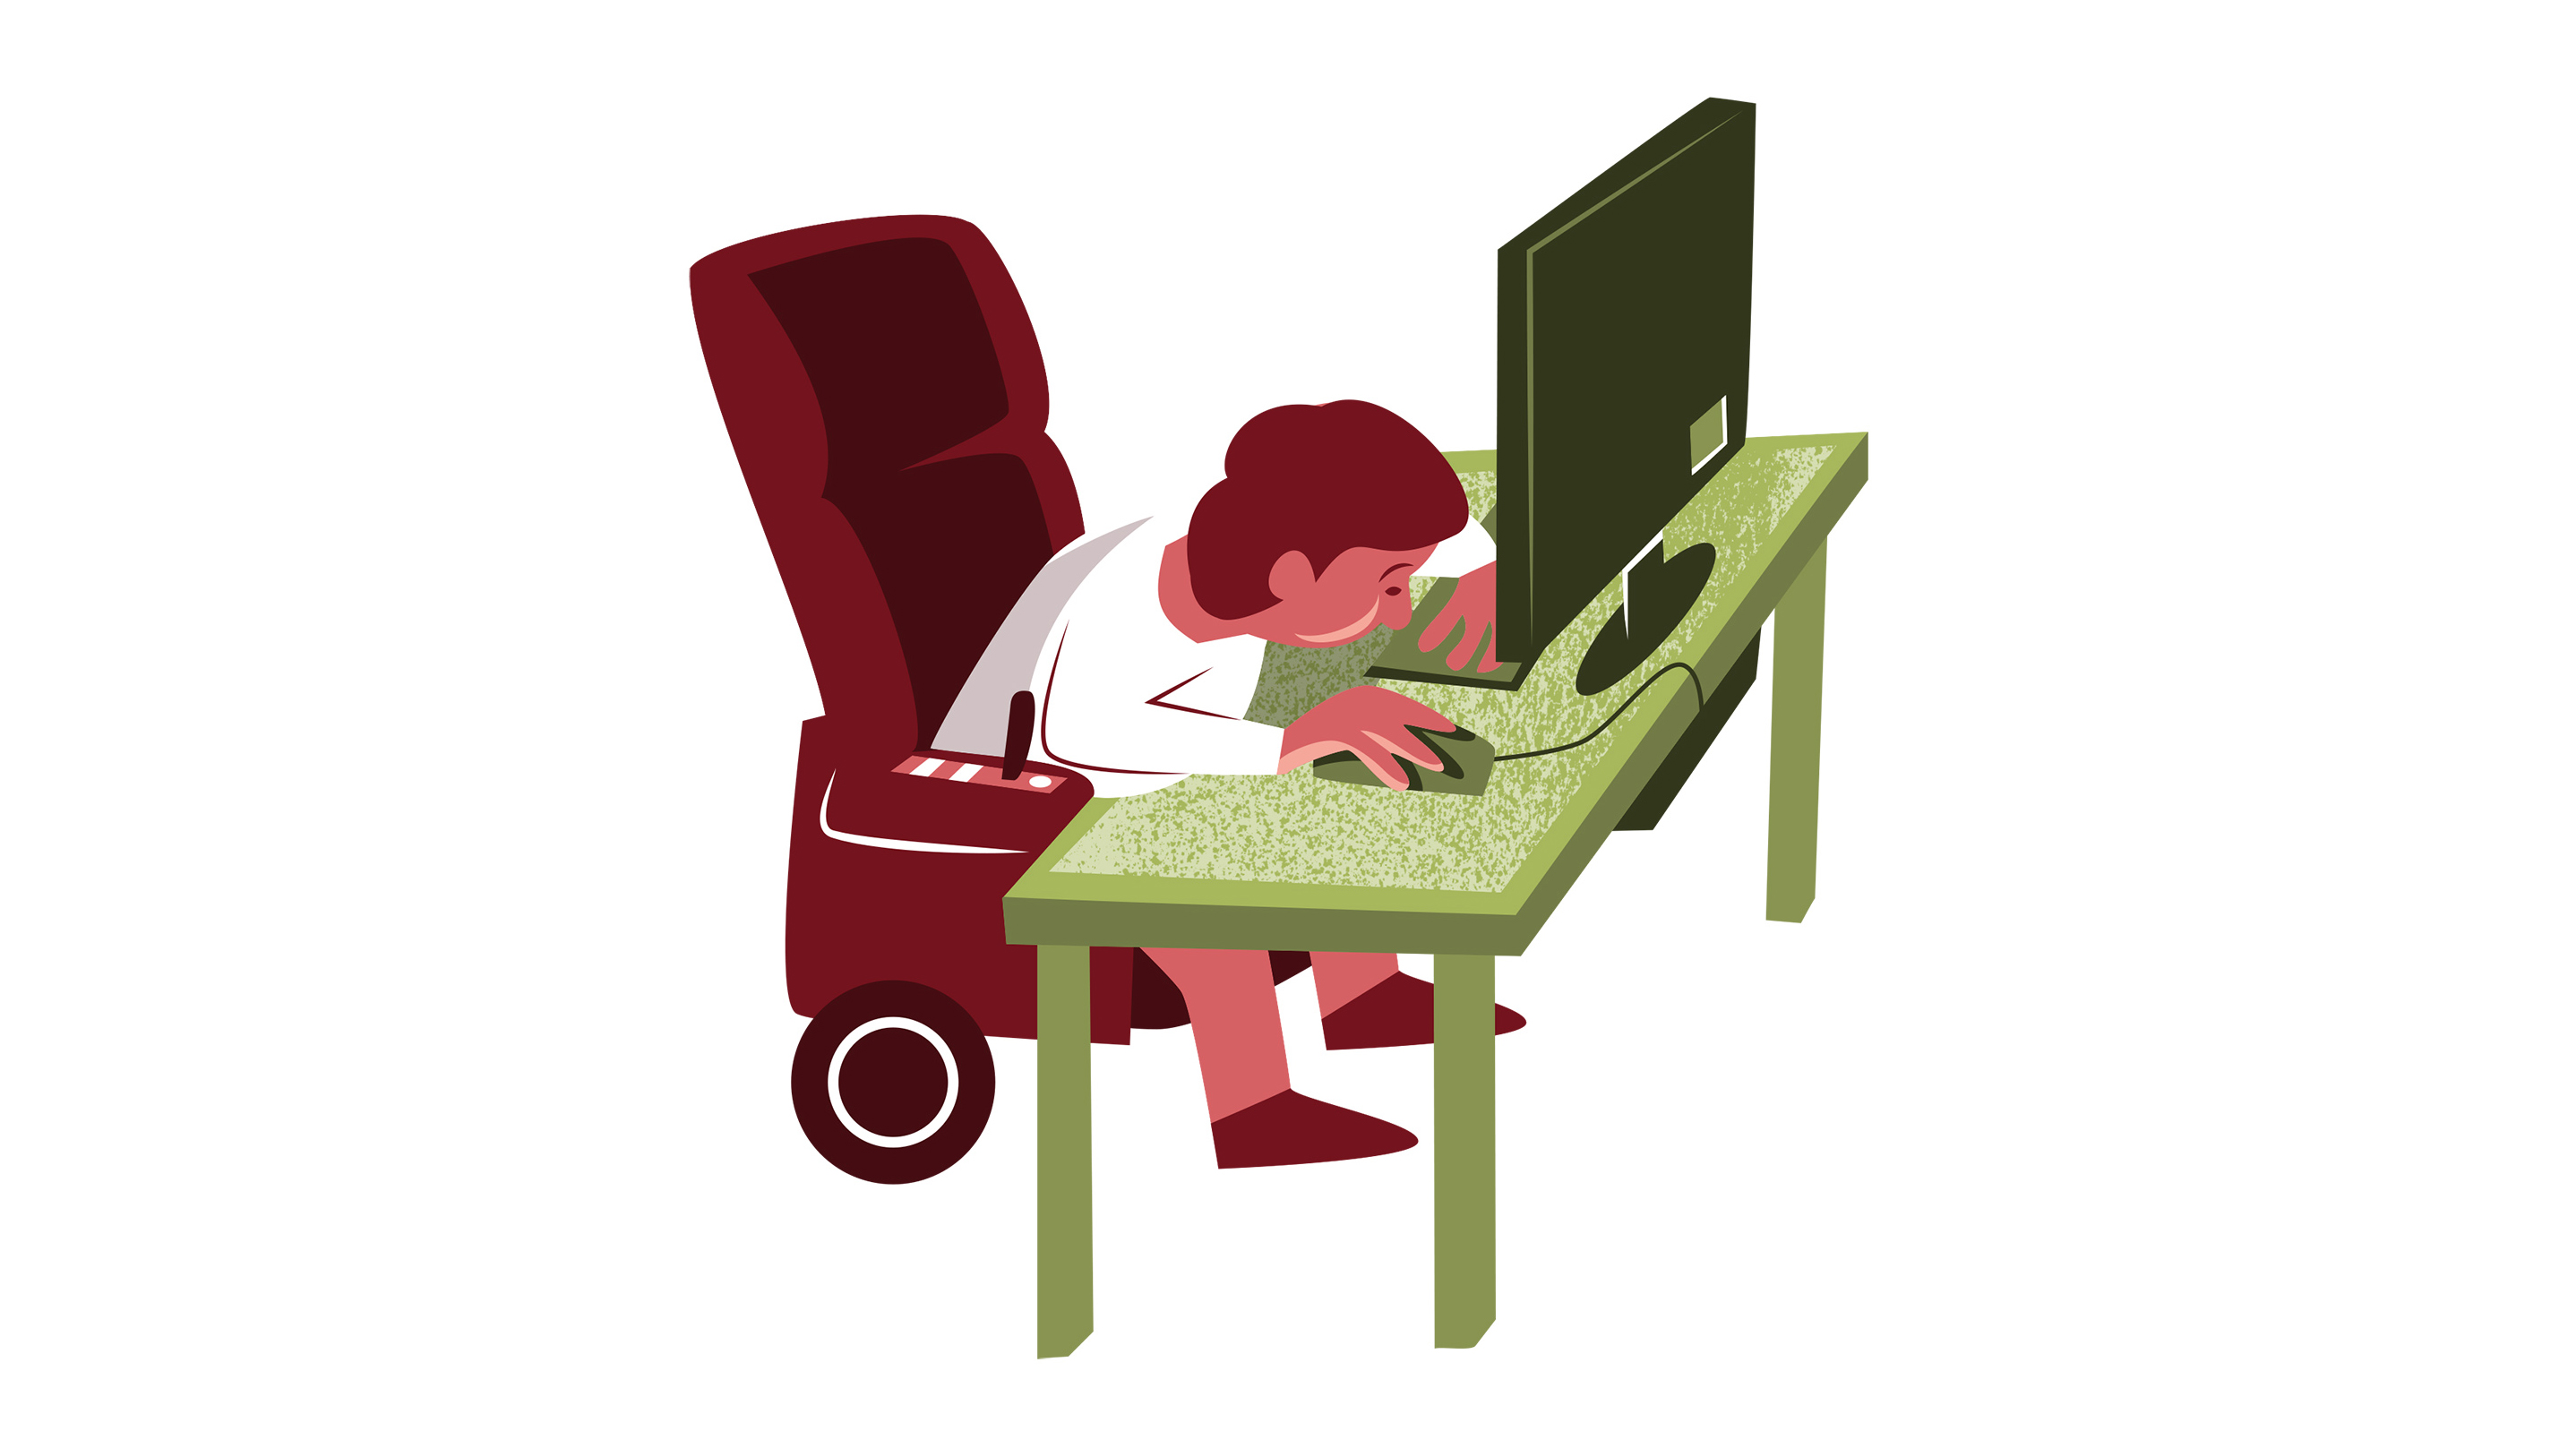 Vektorillustration av person i rullstol som använder en dator.